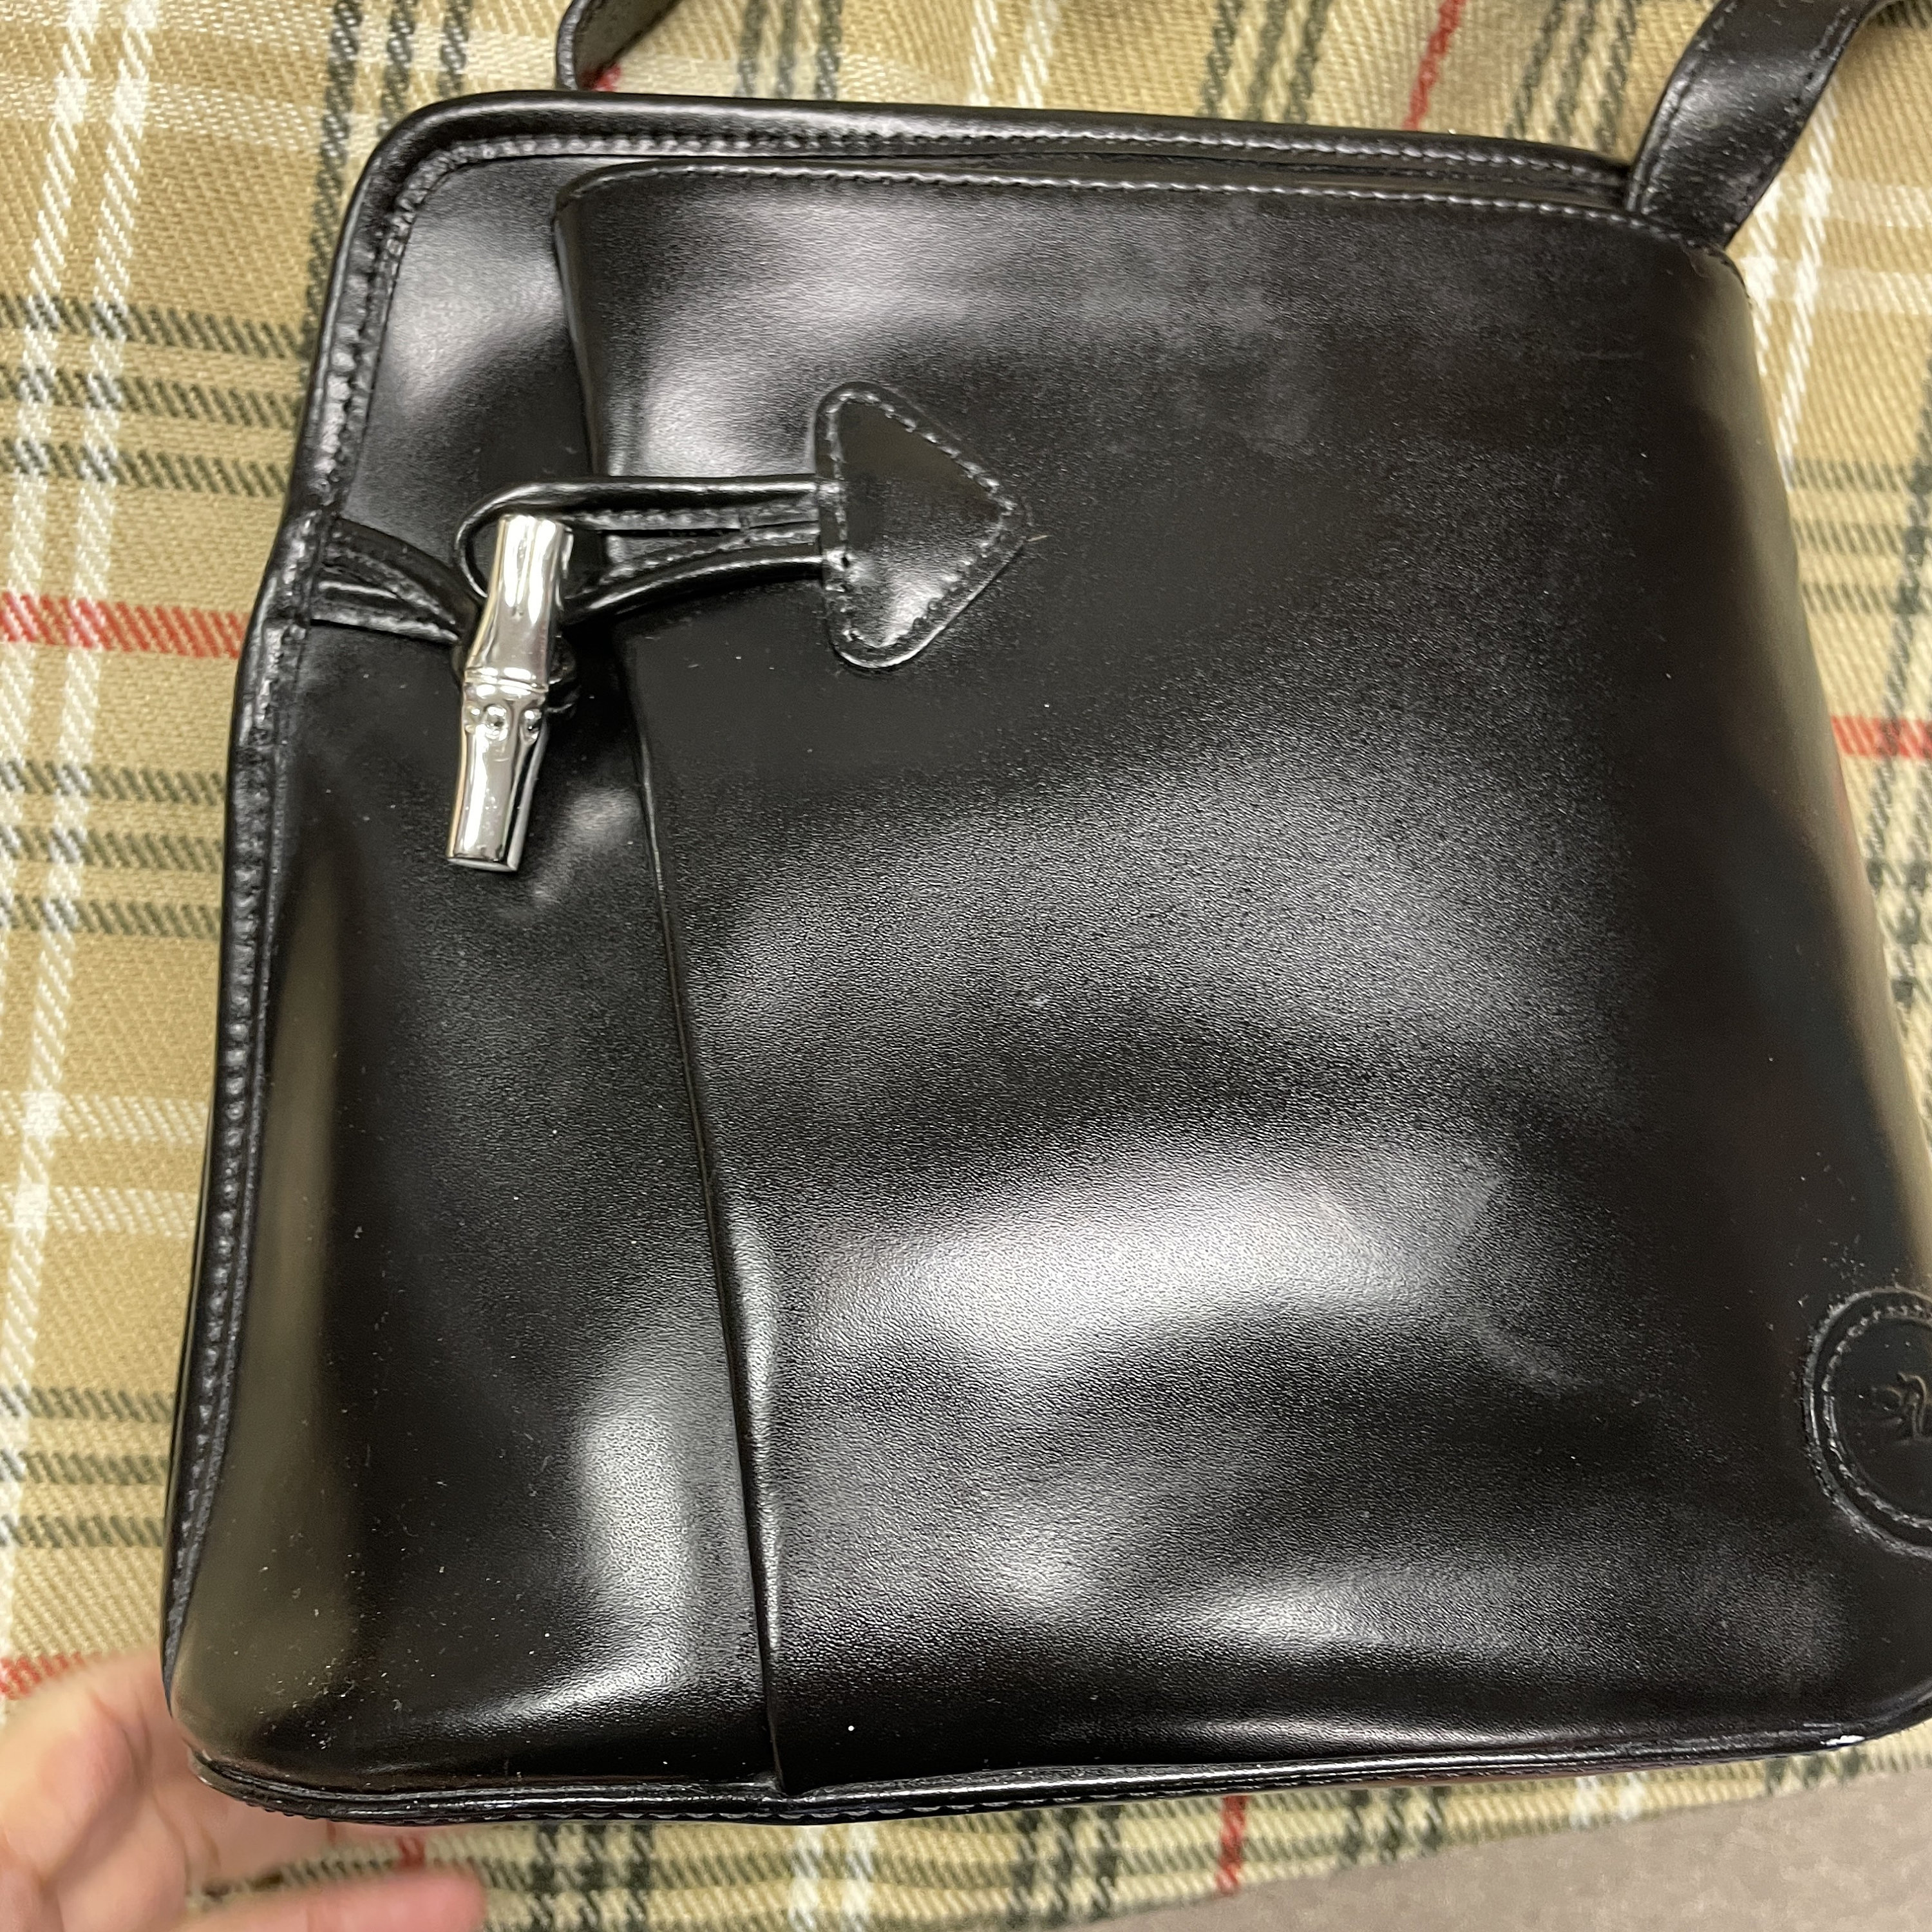 Longchamp Quadri Leather Hobo Bag Black Shoulder Bag Purse Silver Accents  $430